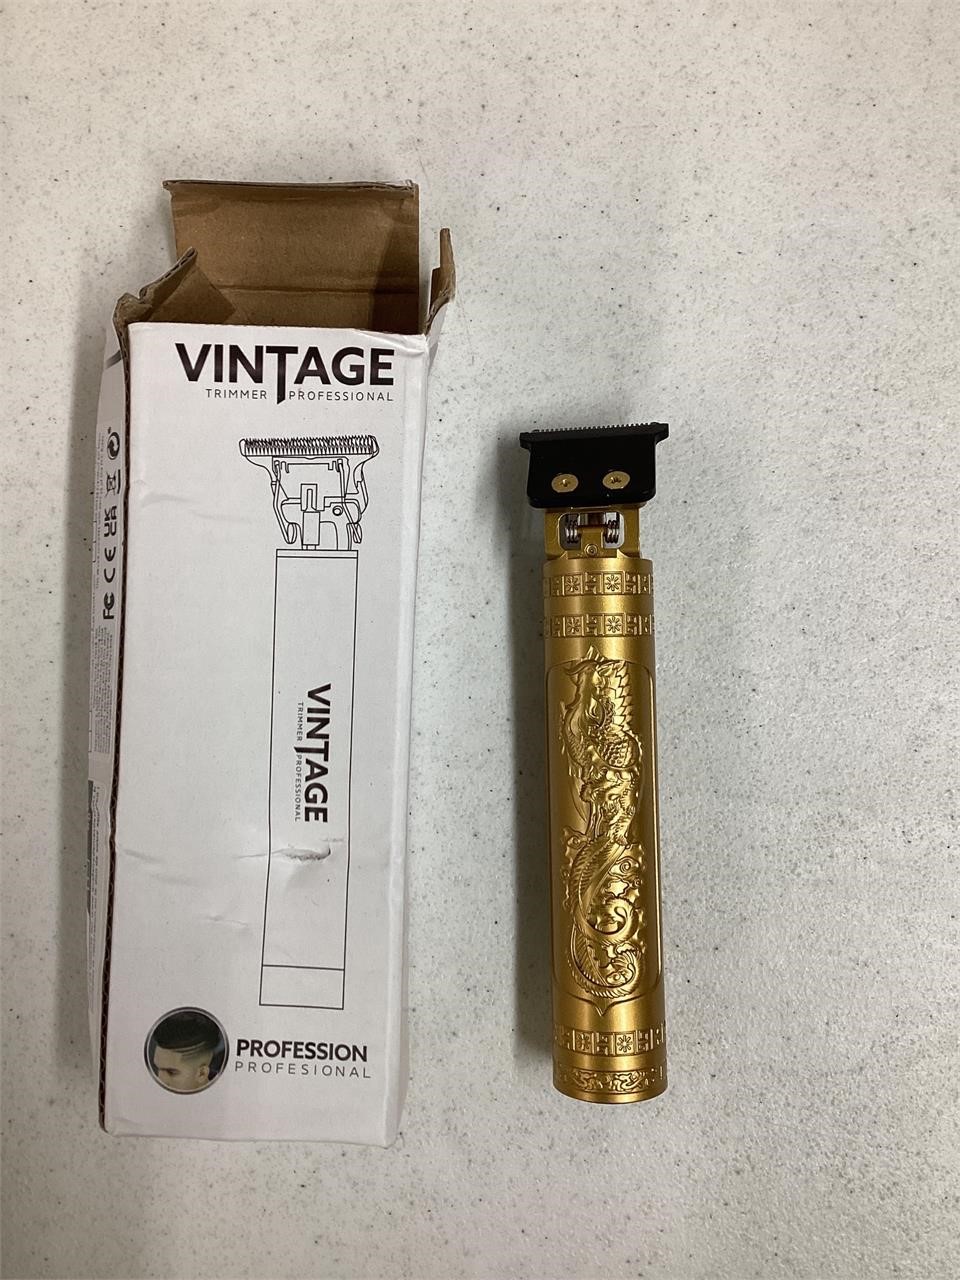 Vintage trimmer